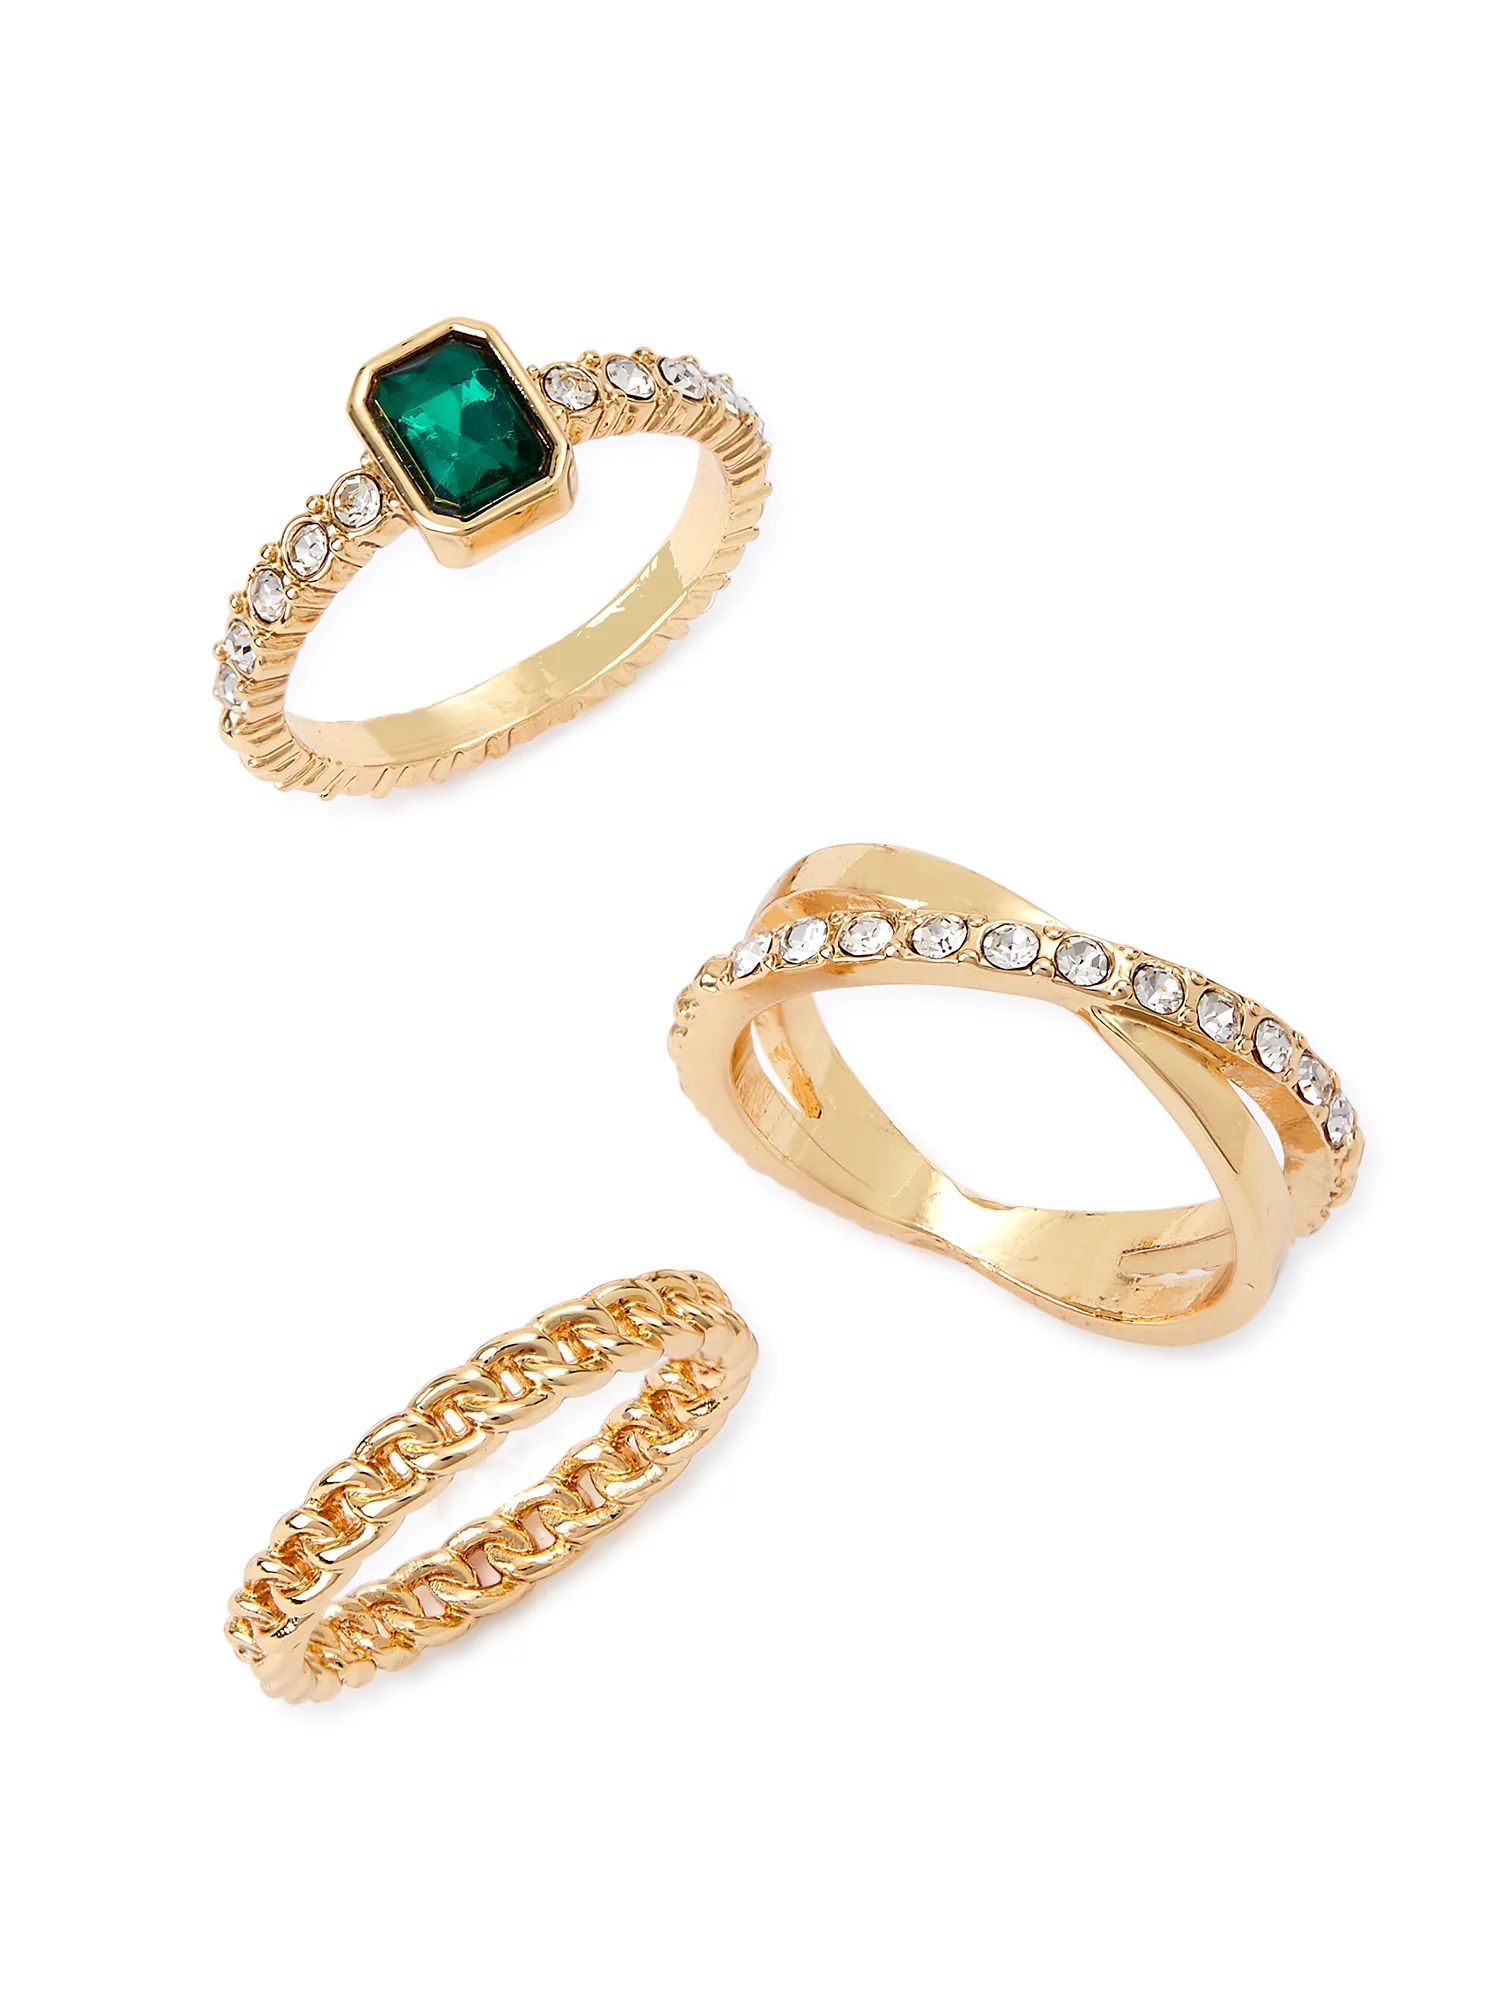 Sofia Jewelry by Sofia Vergara brand Women's Gold Tone Green Stone 3 piece Rings Set, Size 6, 7, ... | Walmart (US)